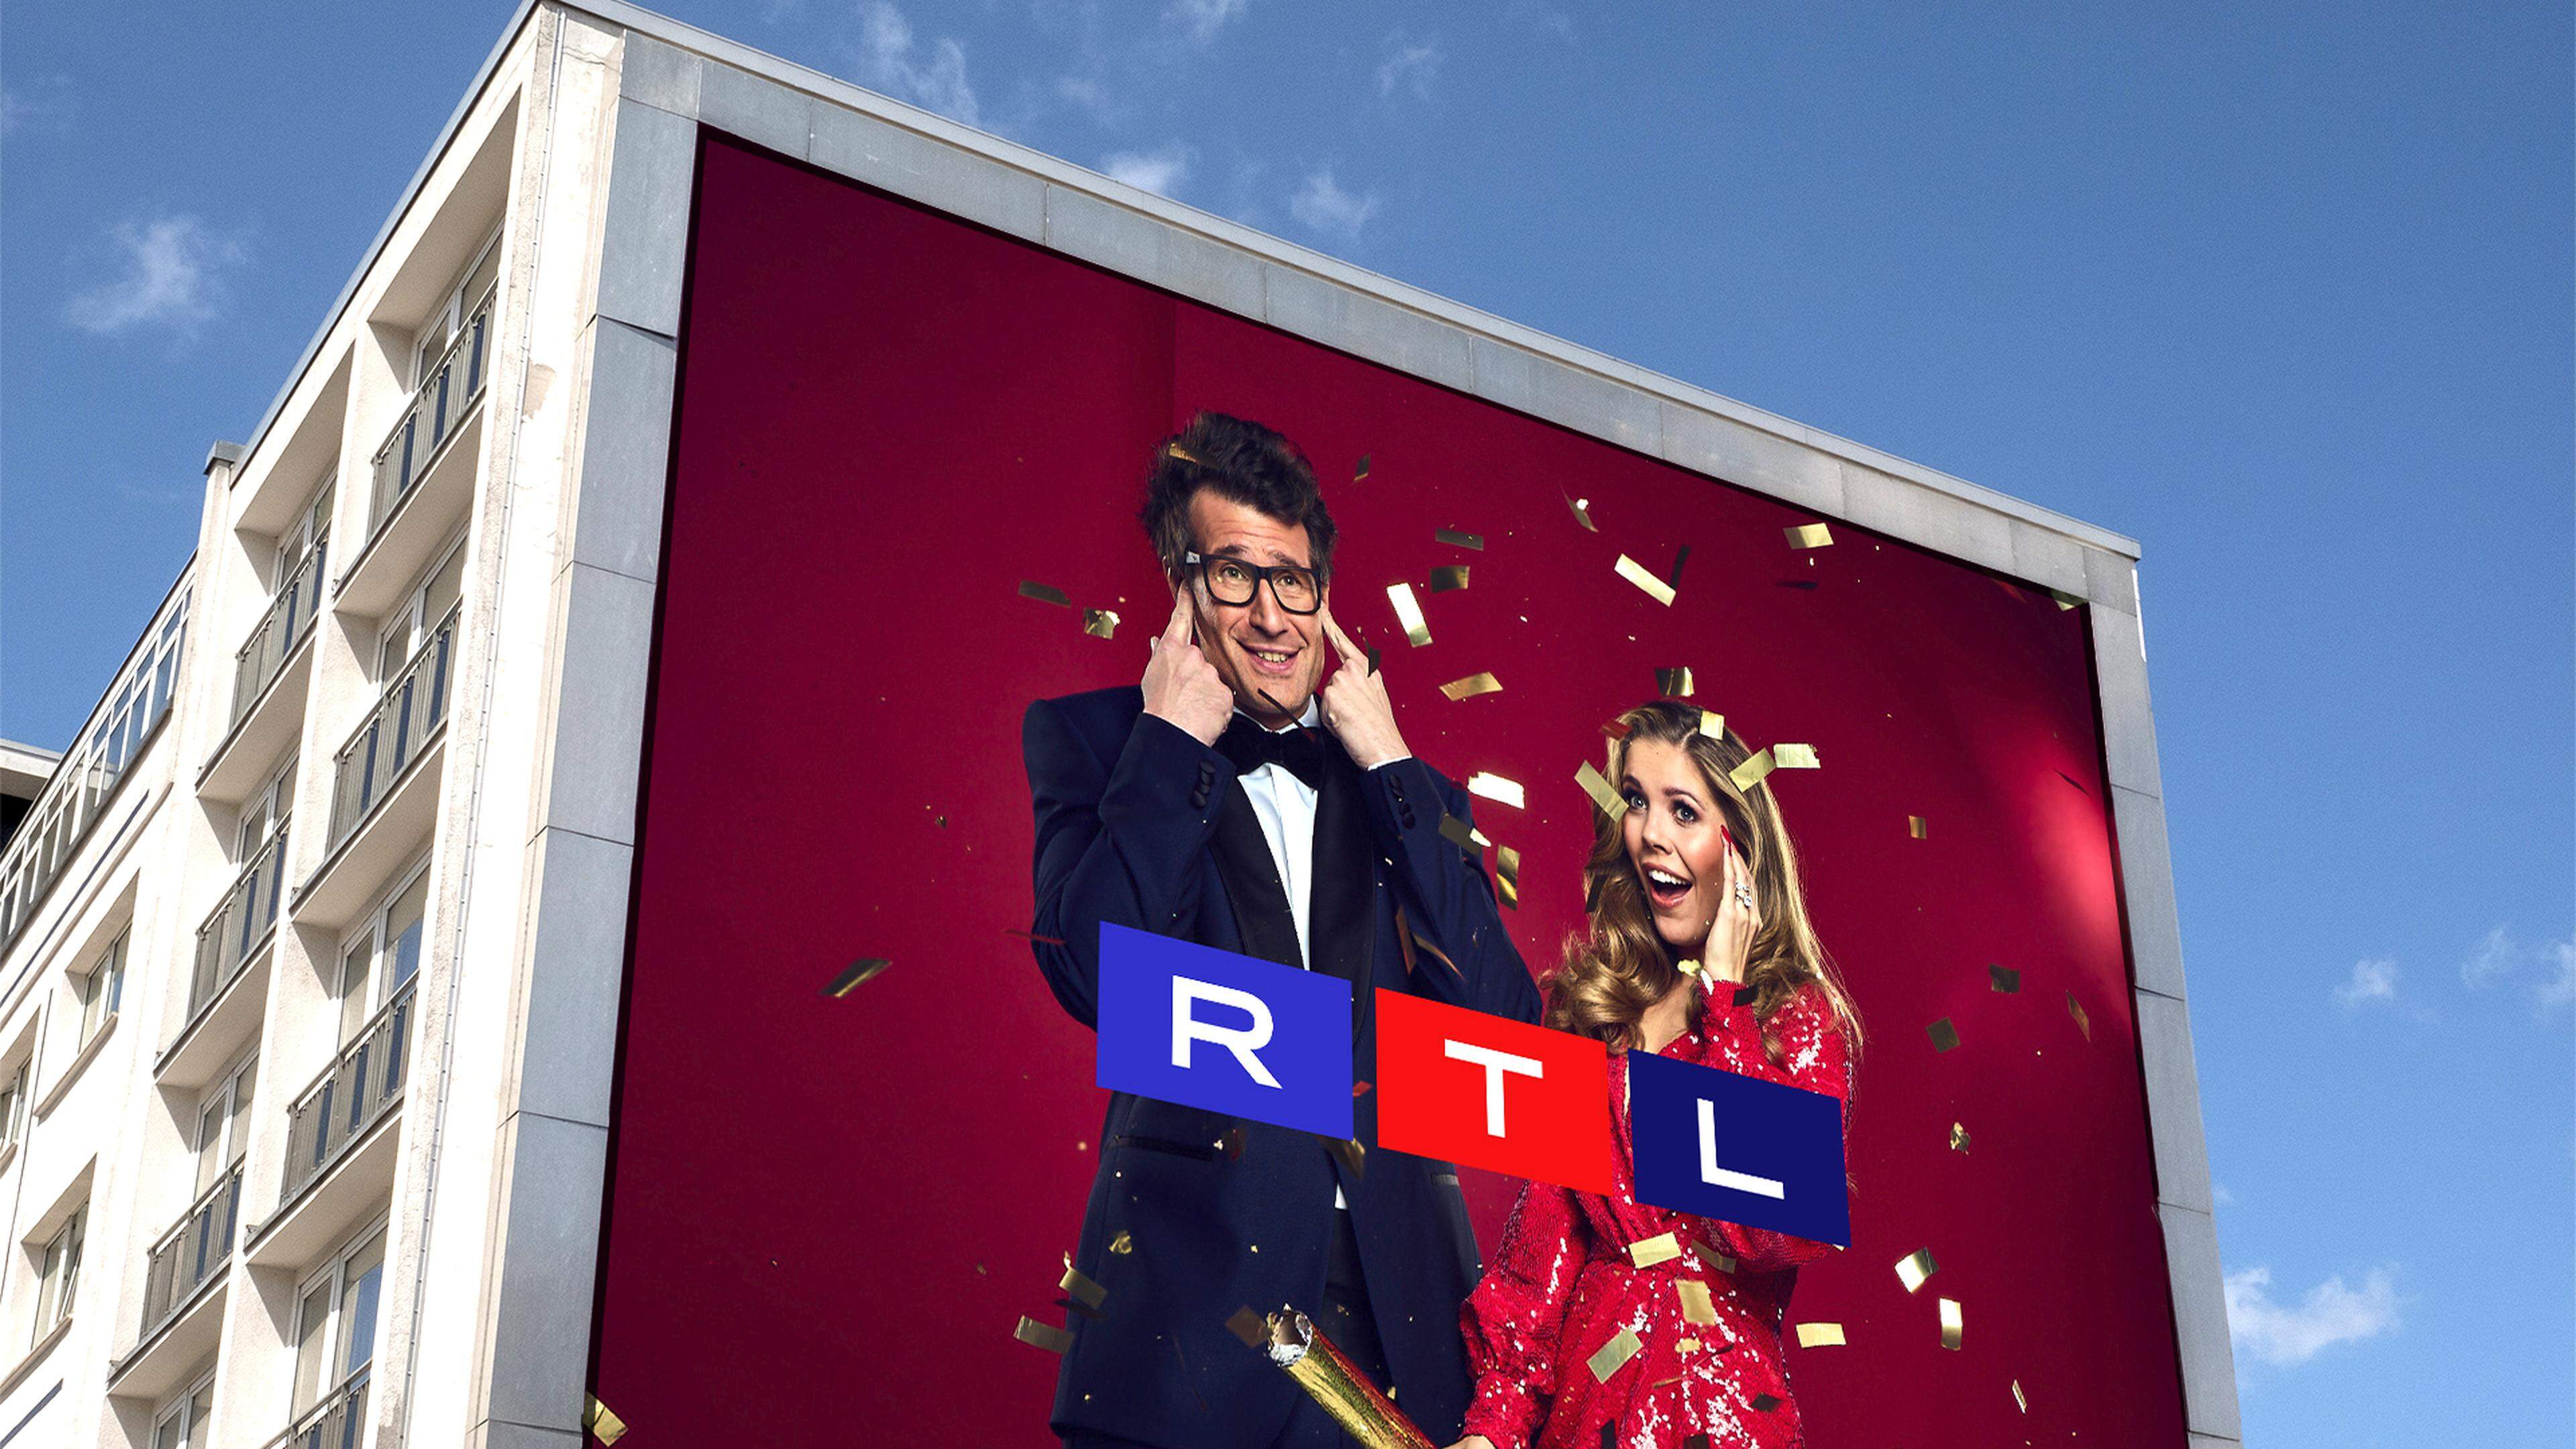 Luxemburger Wort | stimmt der RTL pessimistisch Flaute Werbemärkte